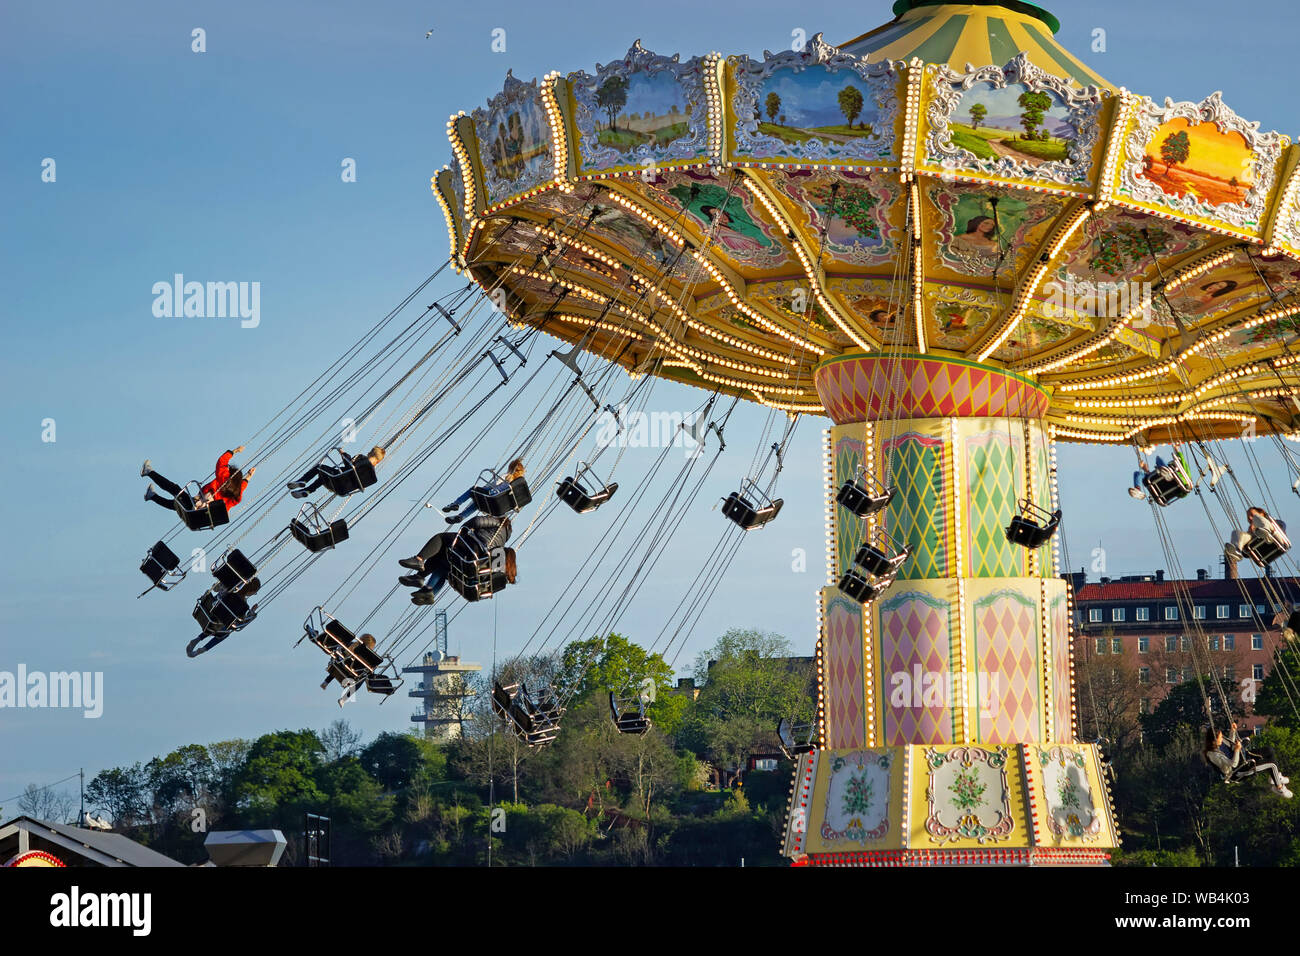 La gente di filatura in Eclipse (ruota panoramica Ferris) attrazione presso il Tivoli Grona Lund Amusement Park, Djurgarden, Stoccolma Svezia Foto Stock